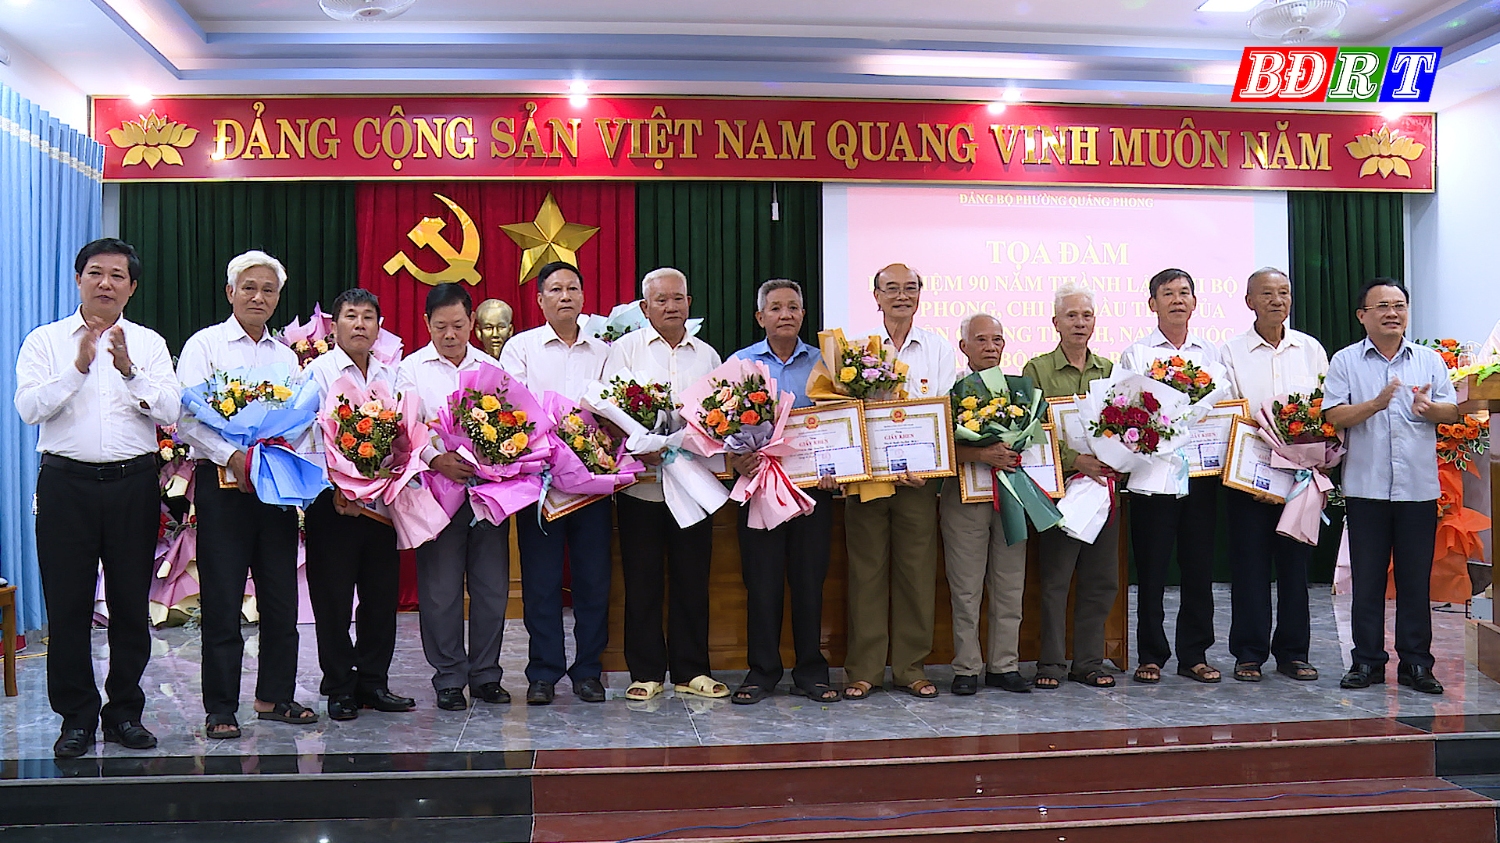 Đảng bộ phường Quảng Phong tặng giấy khen cho 13 cá nhân vì đã có nhiều cống hiến trong công tác xây dựng Đảng bộ phường Quảng Phong